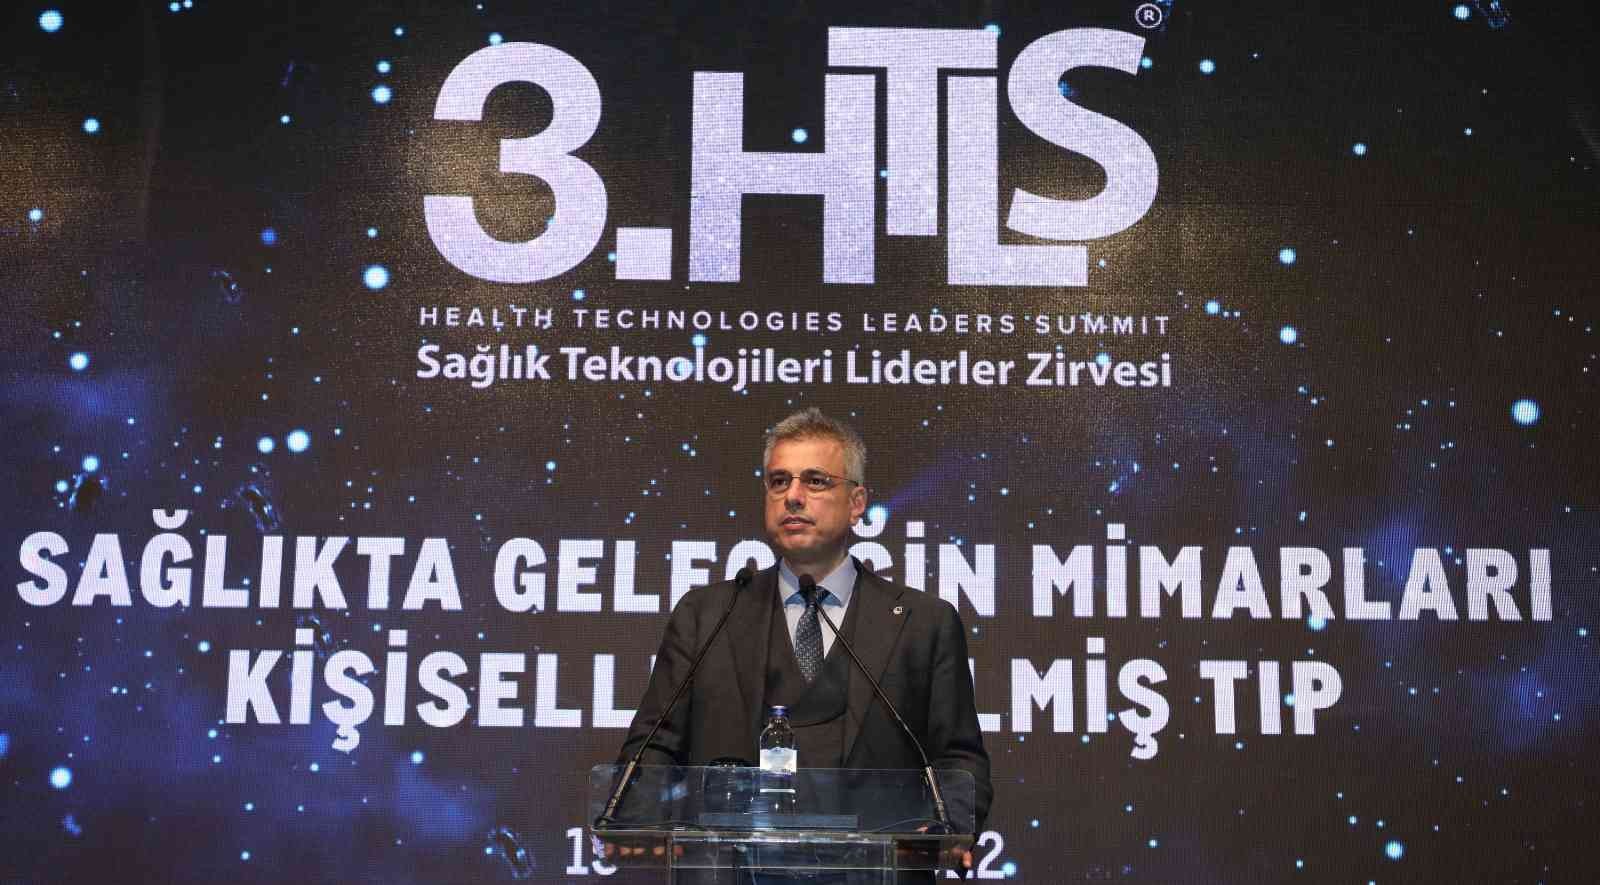 İstanbul İl Sağlık Müdürü Prof. Dr. Kemal Memişoğlu, Gelecekte kişiselleştirilmiş tıp, çok daha farklı bir noktaya gelecek. Biz ise şimdi ...